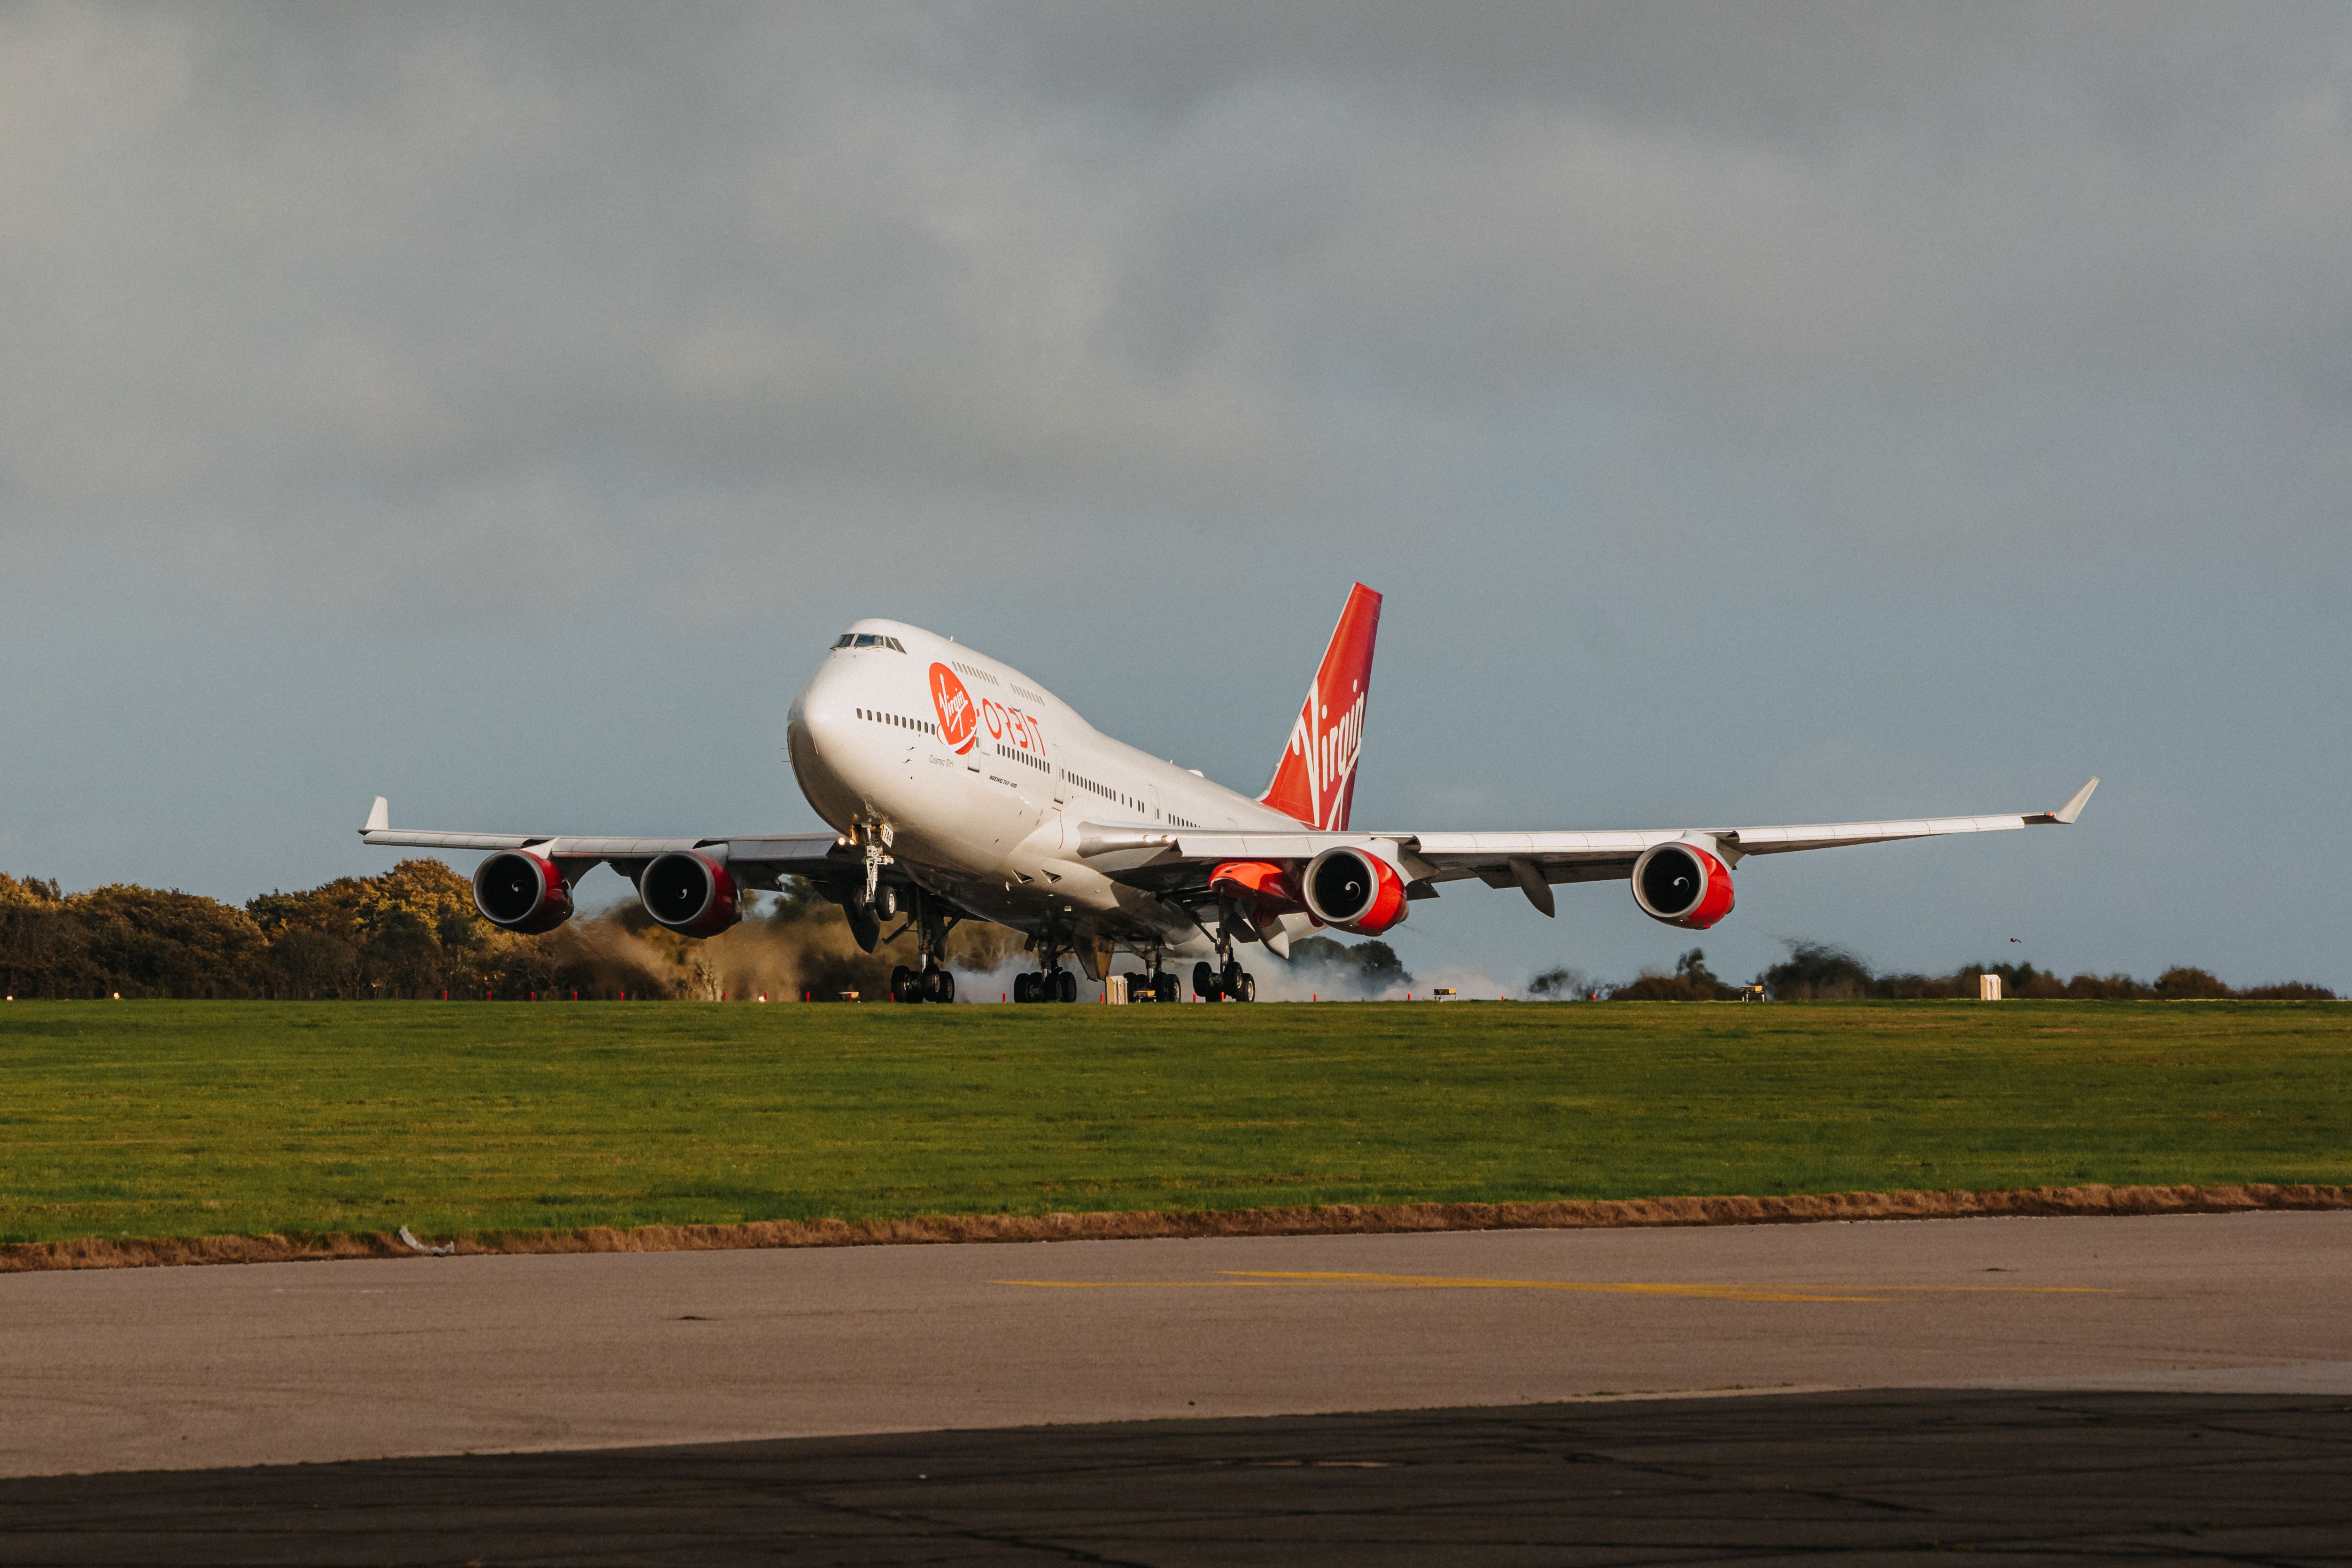 Virgin Orbit Boeing 747 Lands In UK For Start Me Up Mission